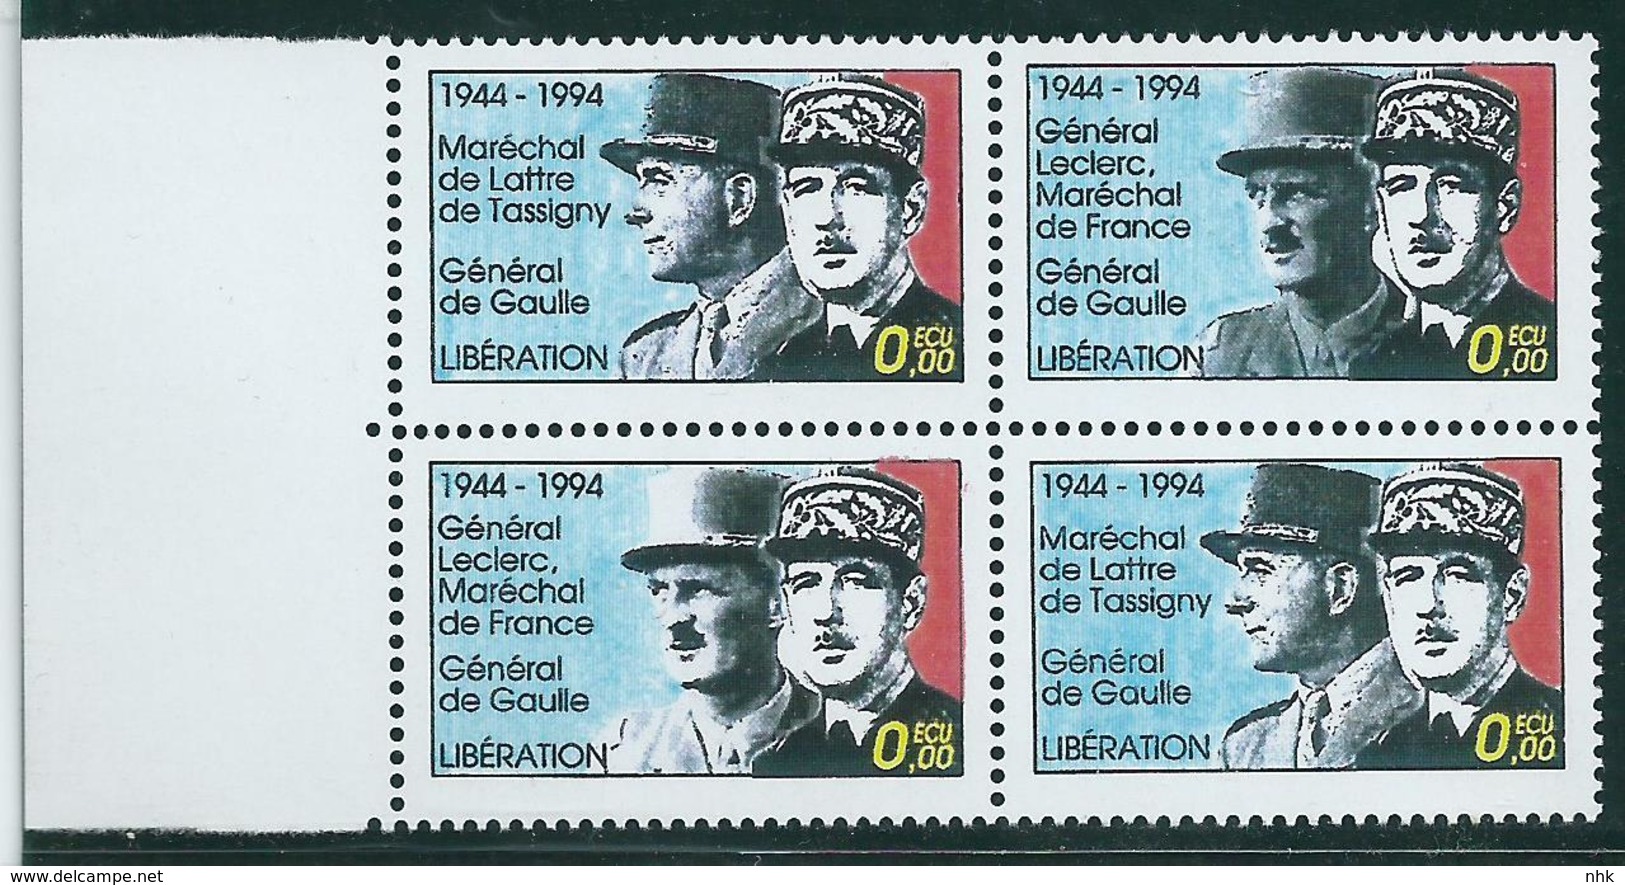 Vignettes Libération De Gaulle De Lattre De Tassigny Leclerc Bloc De 4 Dont Leclerc De 2 Types ** - De Gaulle (Général)